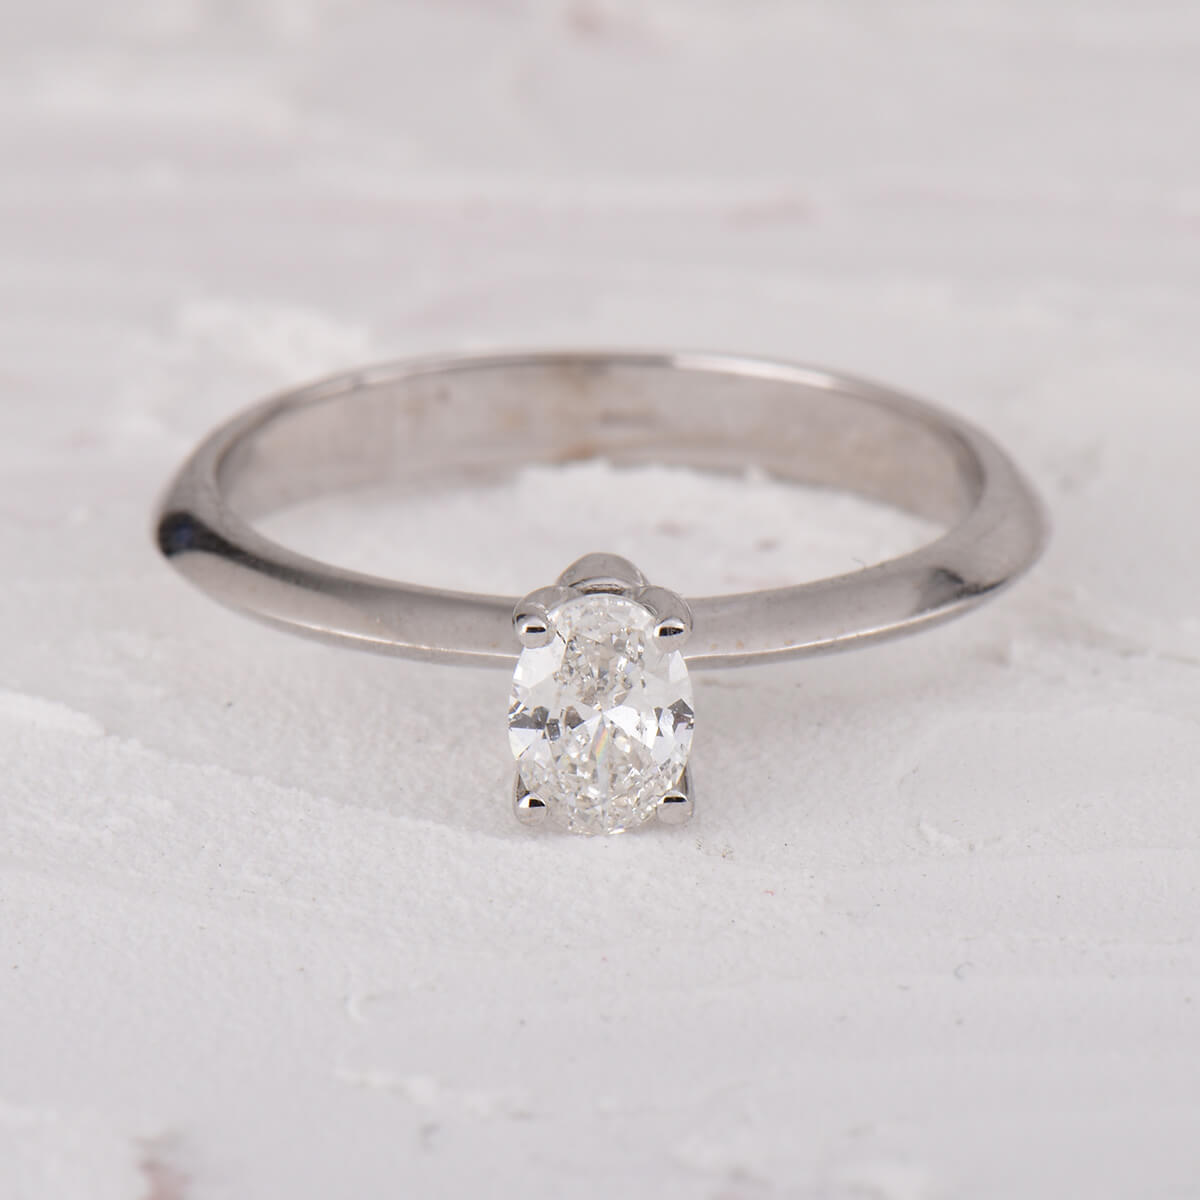 Miatrix Oval Solitaire Diamond Ring 